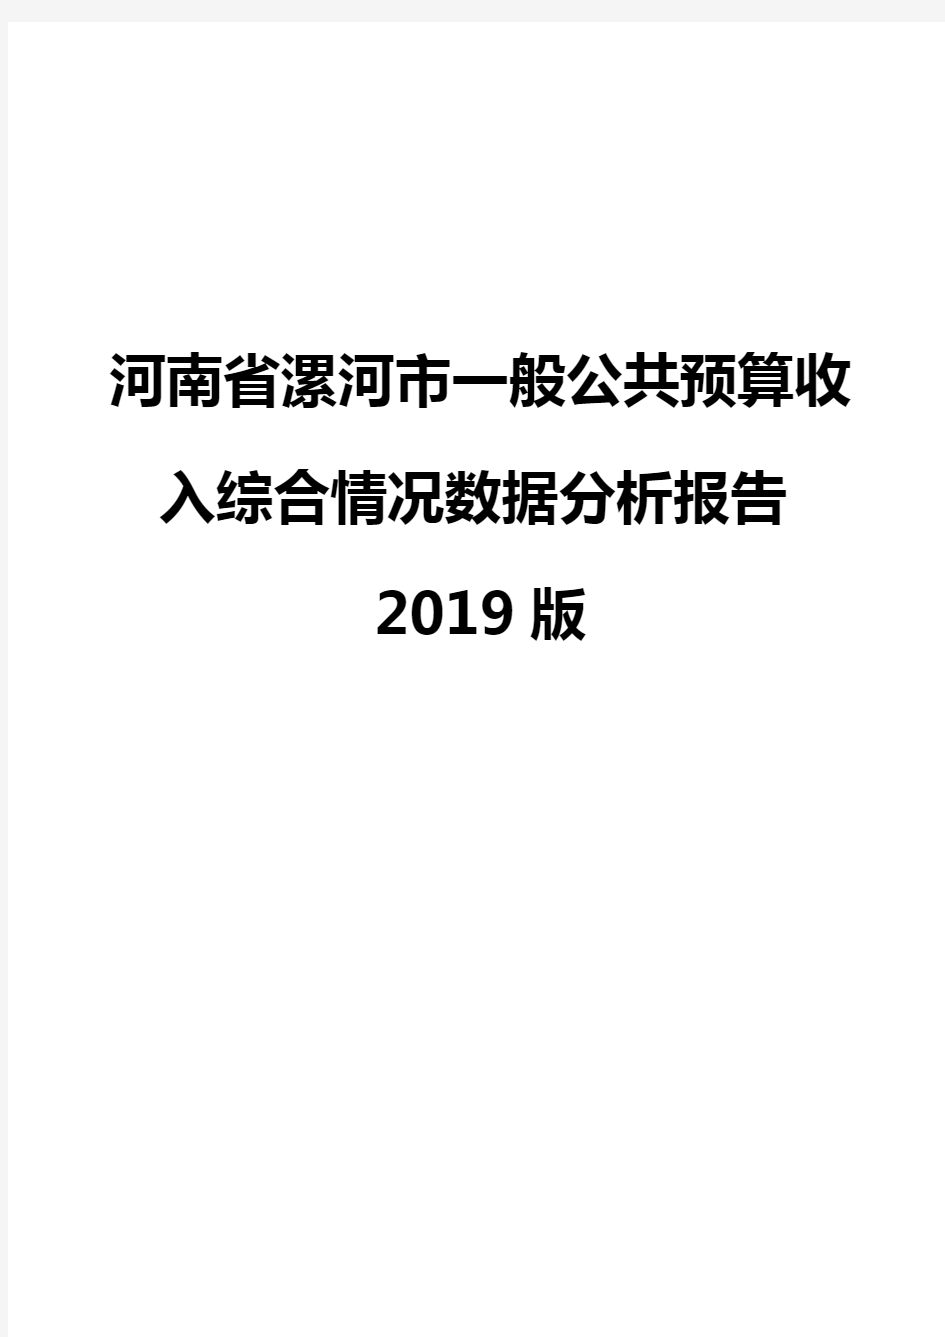 河南省漯河市一般公共预算收入综合情况数据分析报告2019版